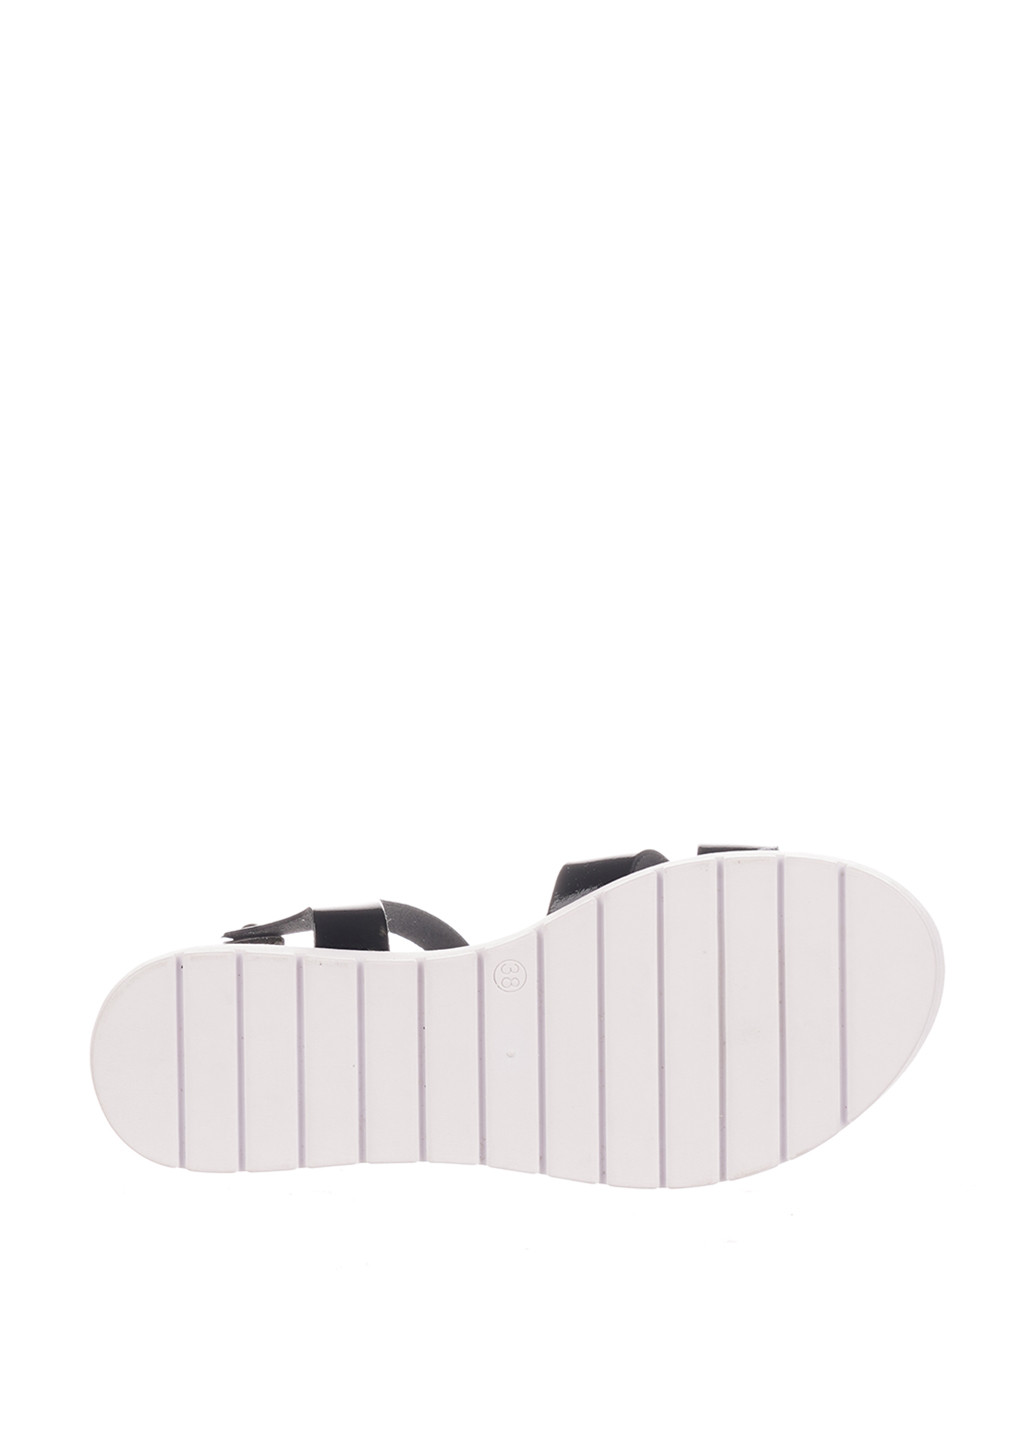 Черные босоножки Bellini с ремешком с белой подошвой, лаковые